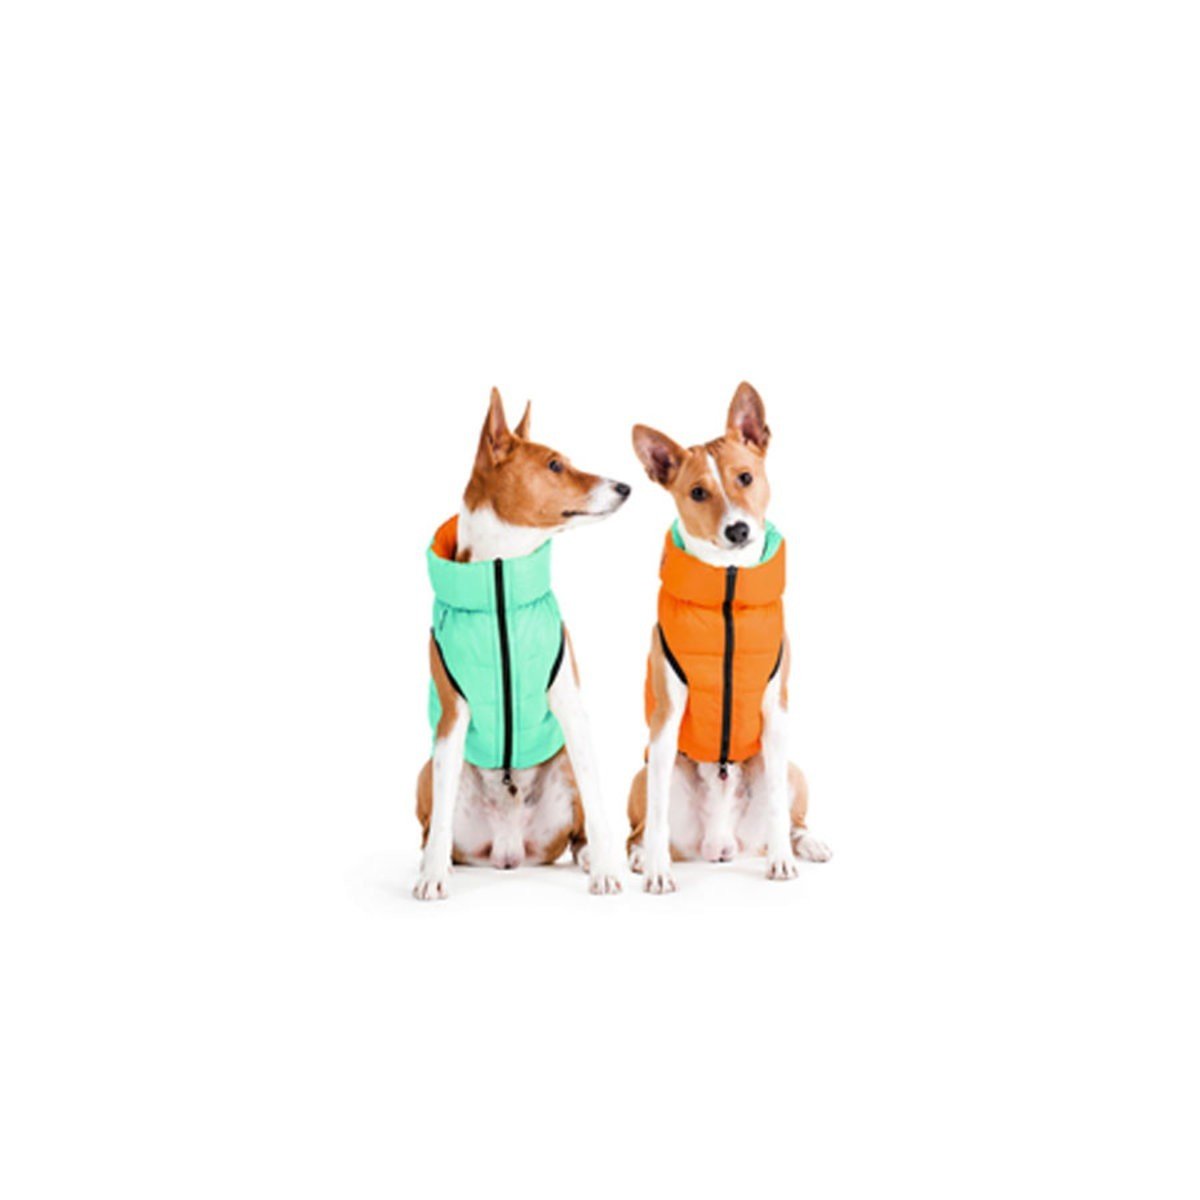 Курточка для собак AiryVest Lumi двухсторонняя, светящаяся в темноте, M47, салатово-оранжевая - фото 2